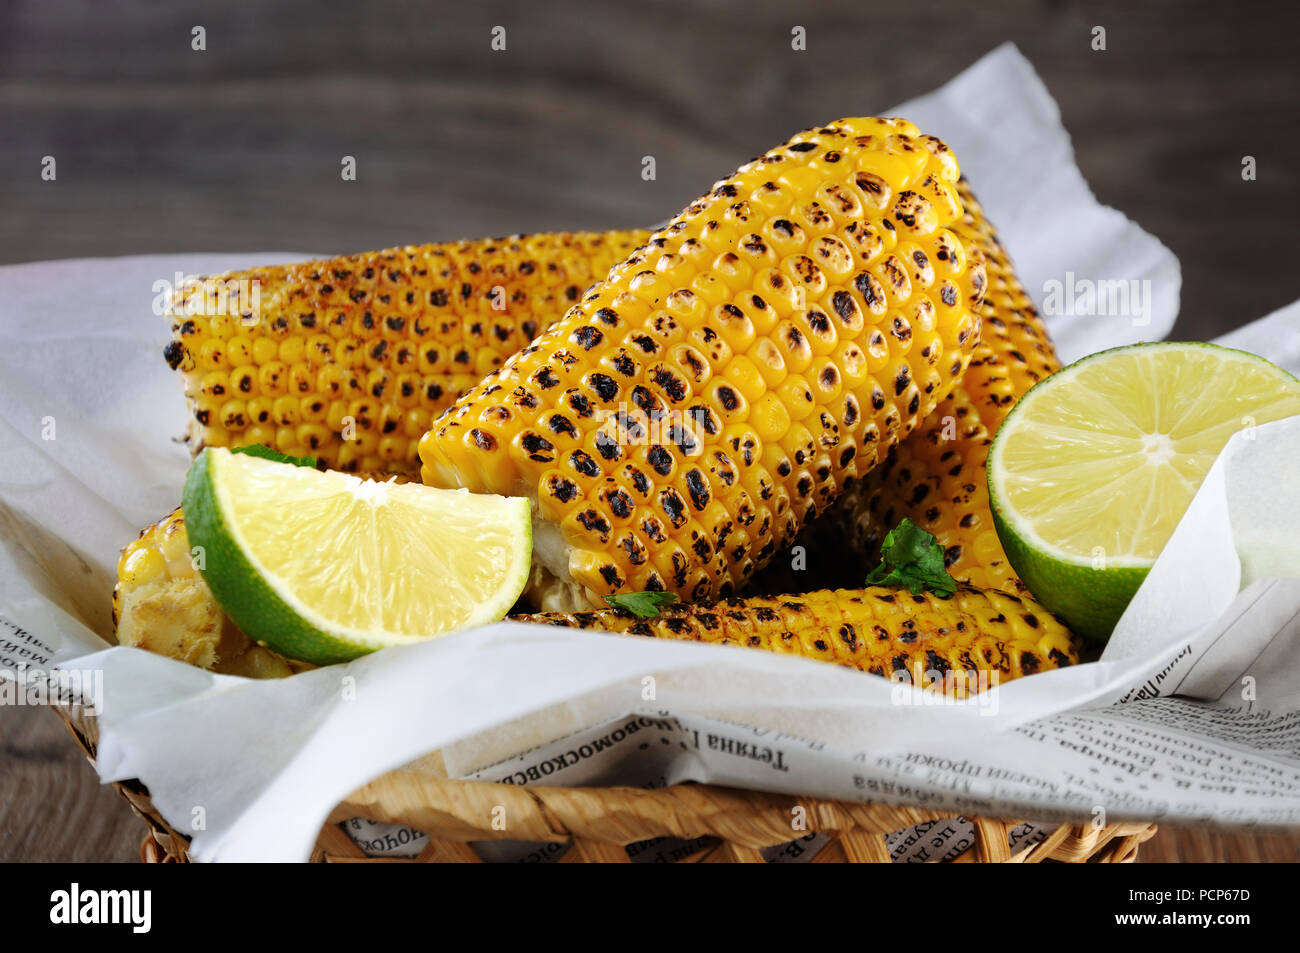 Lecker gebratenen Mais, mit Kalk gerieben und gewürzt mit scharfen Gewürzen. Indischen und mexikanischen Stil. Stockfoto